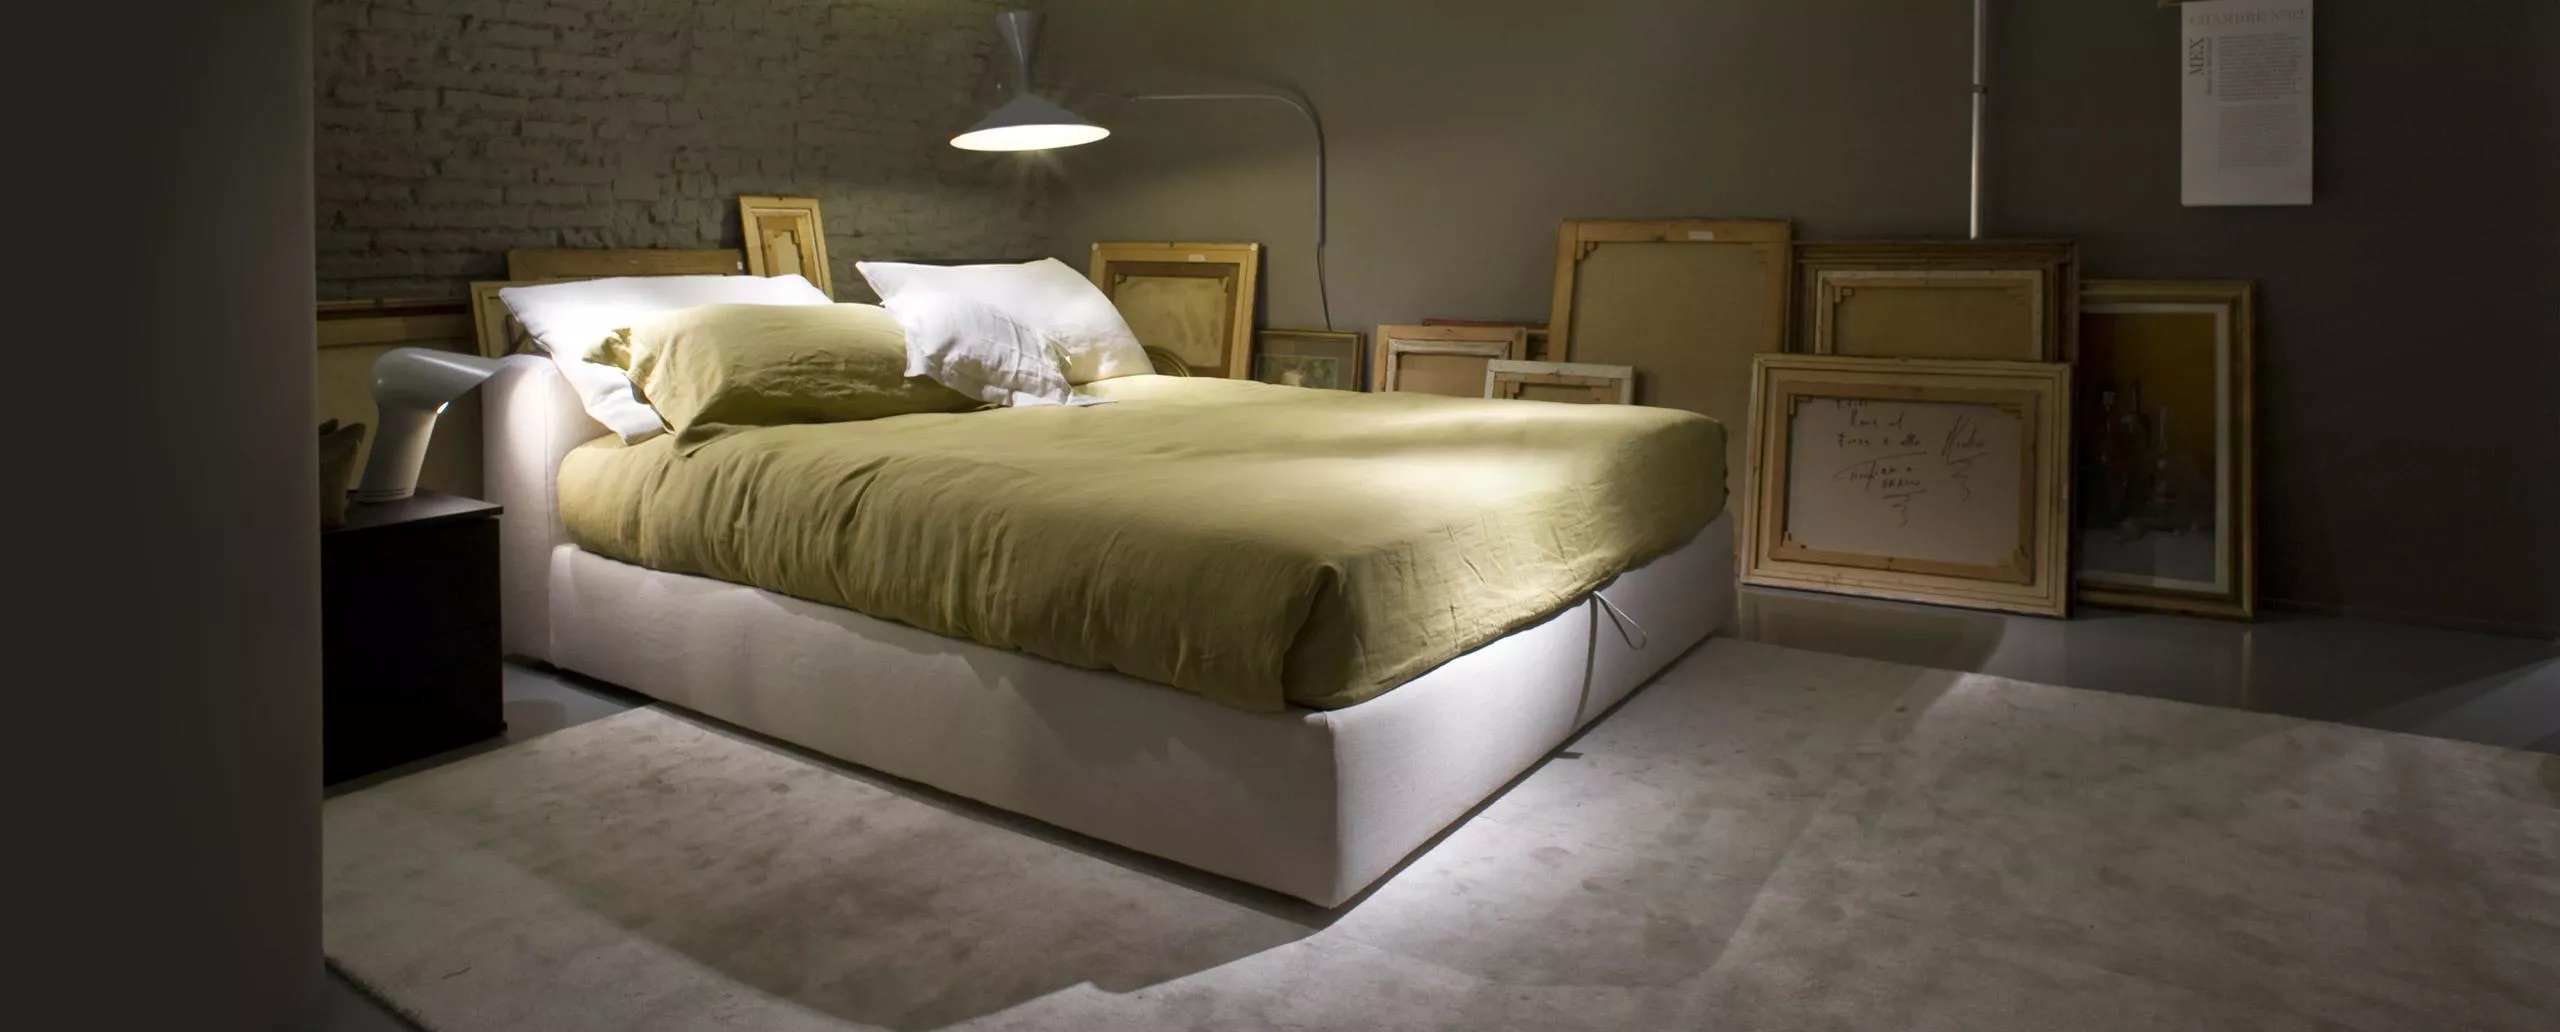 Кровать Mex Cassina L34 — купить по цене фабрики